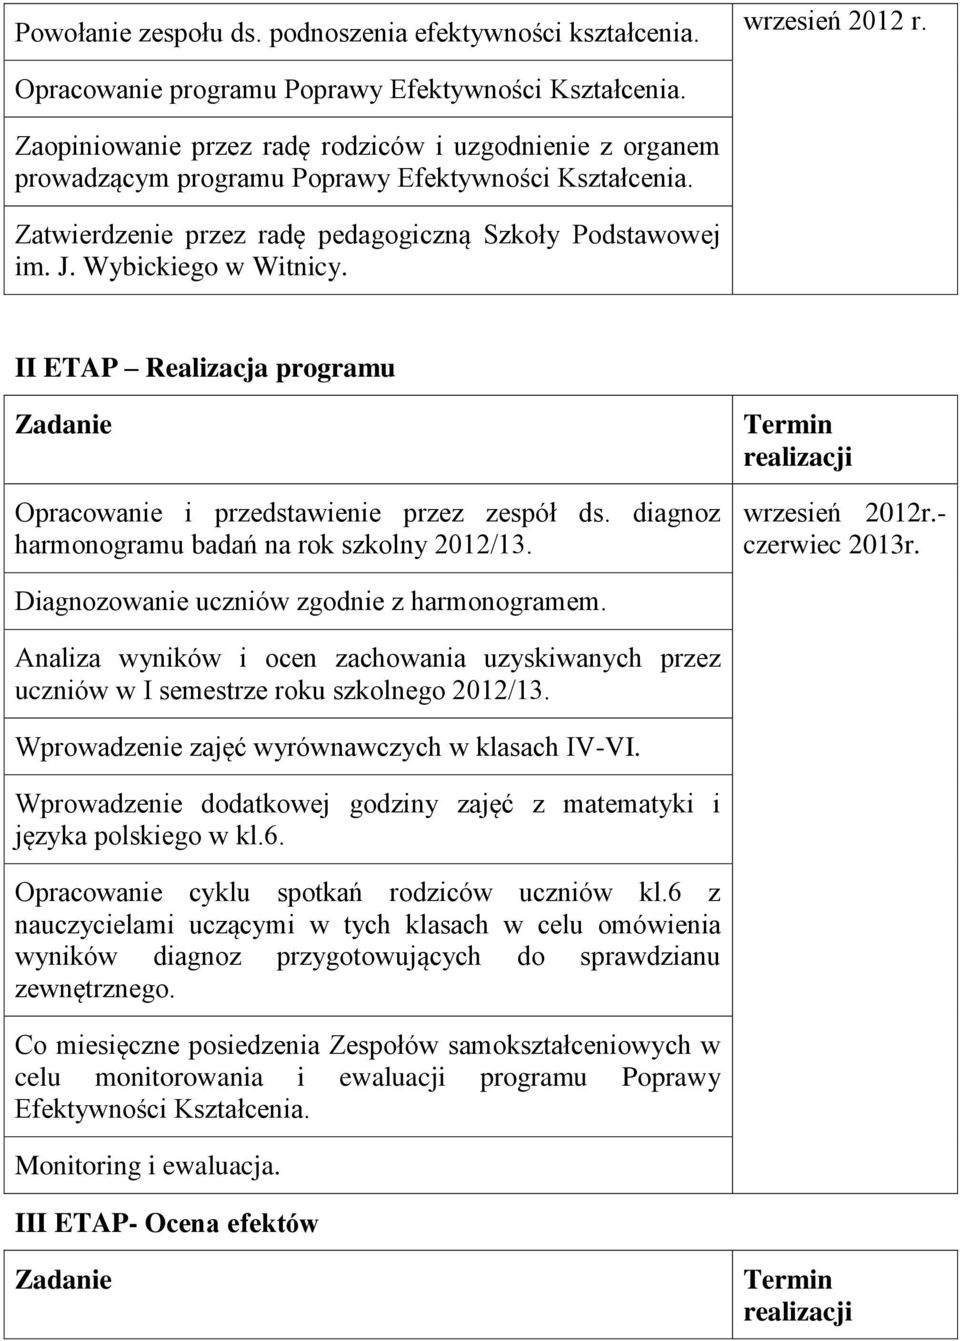 II ETAP Realizacja programu Zadanie Opracowanie i przedstawienie przez zespół ds. diagnoz harmonogramu badań na rok szkolny 2012/13. Termin realizacji wrzesień 2012r.- czerwiec 2013r.